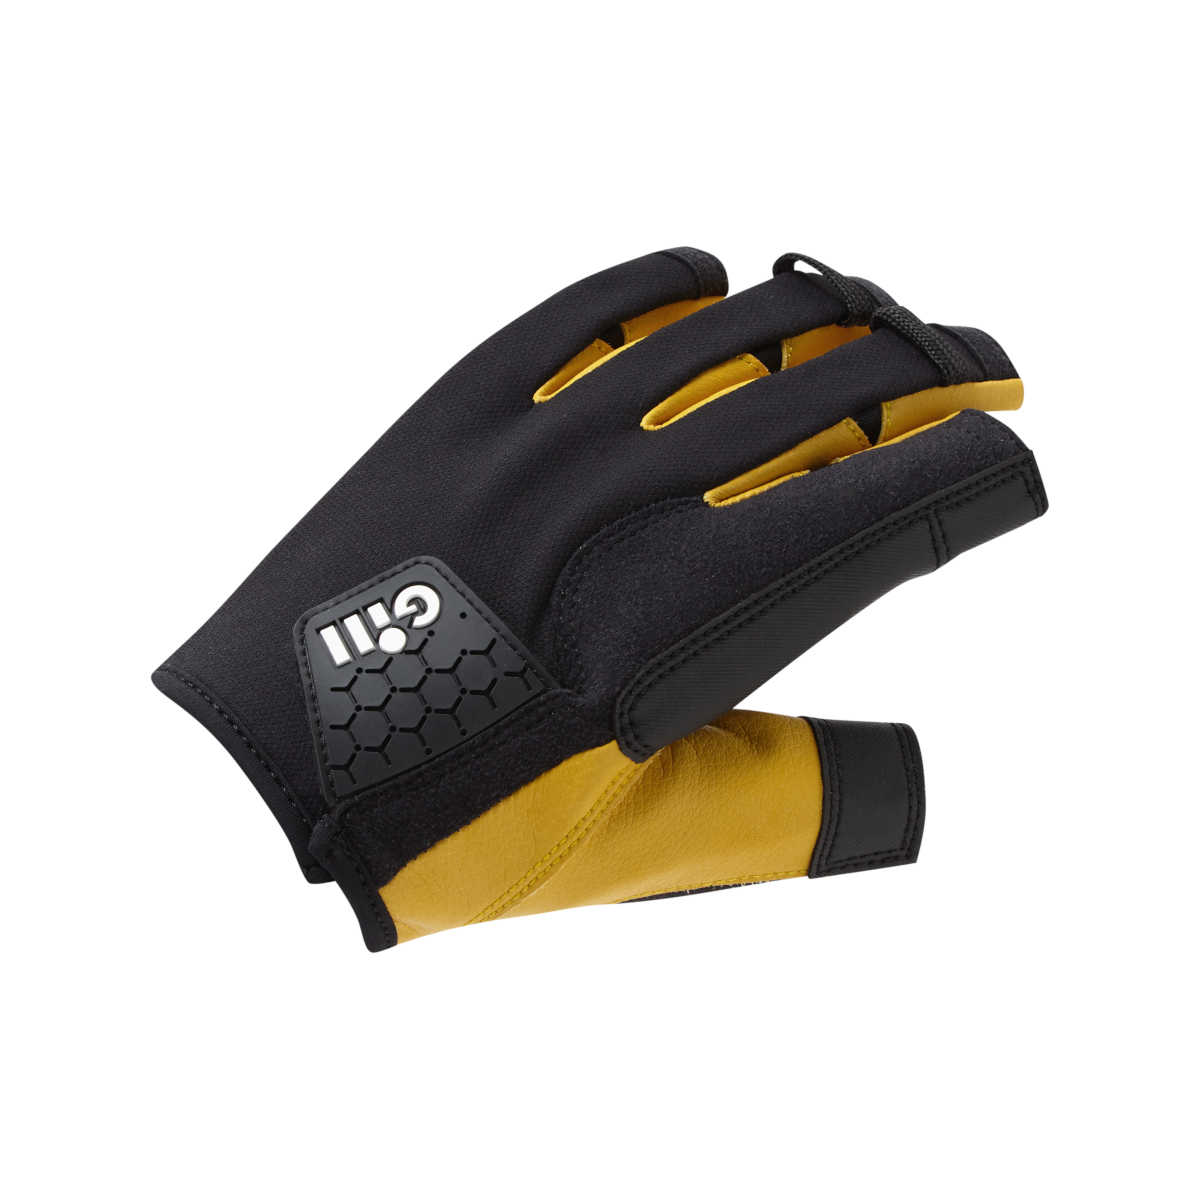 Gill Pro gants de voile à doigts courts - noir, taille S